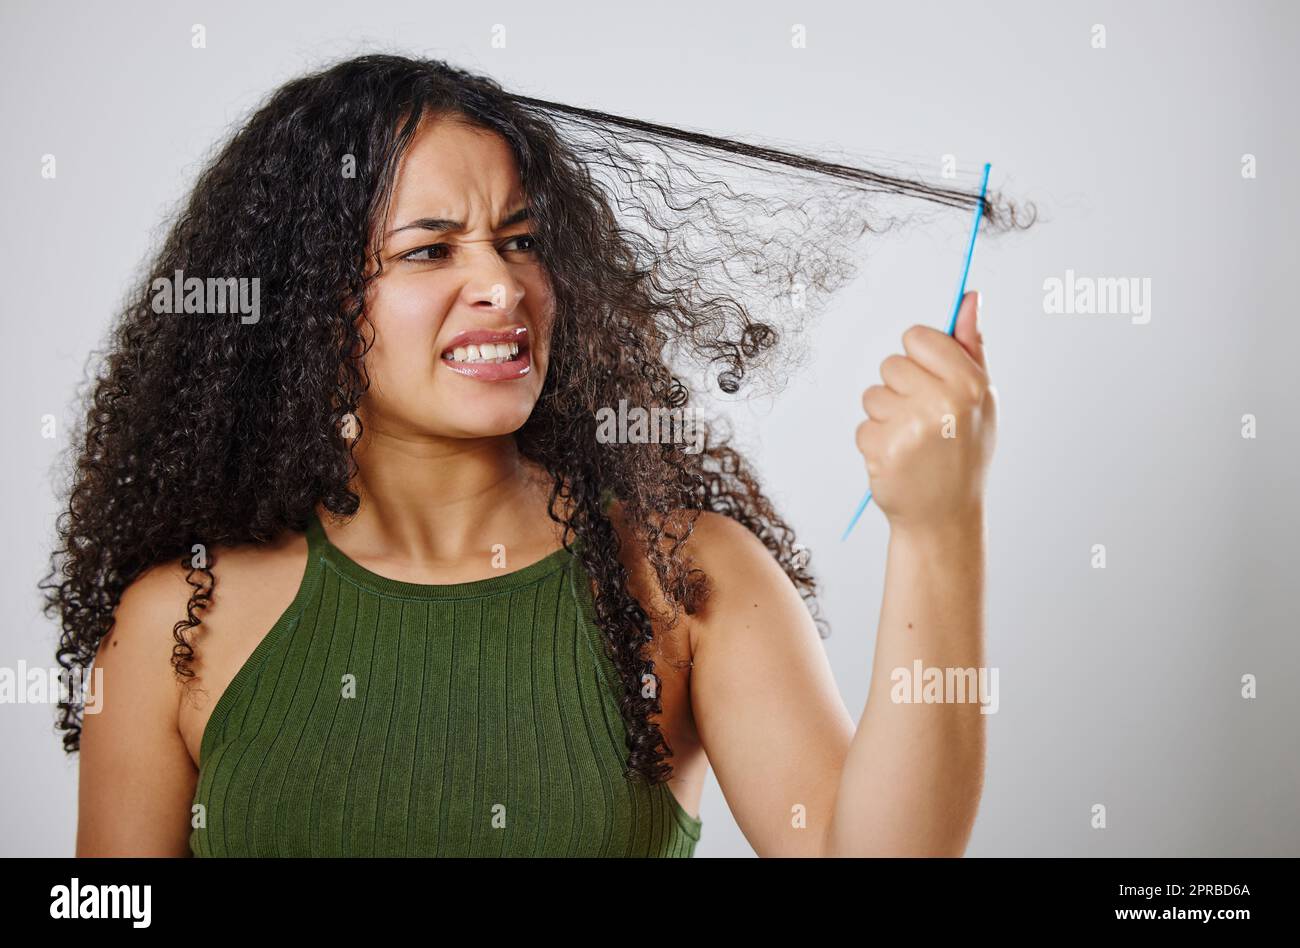 Pourquoi cela doit toujours être une telle lutte. Une femme frognant tout en peignant ses cheveux sur un fond gris. Banque D'Images